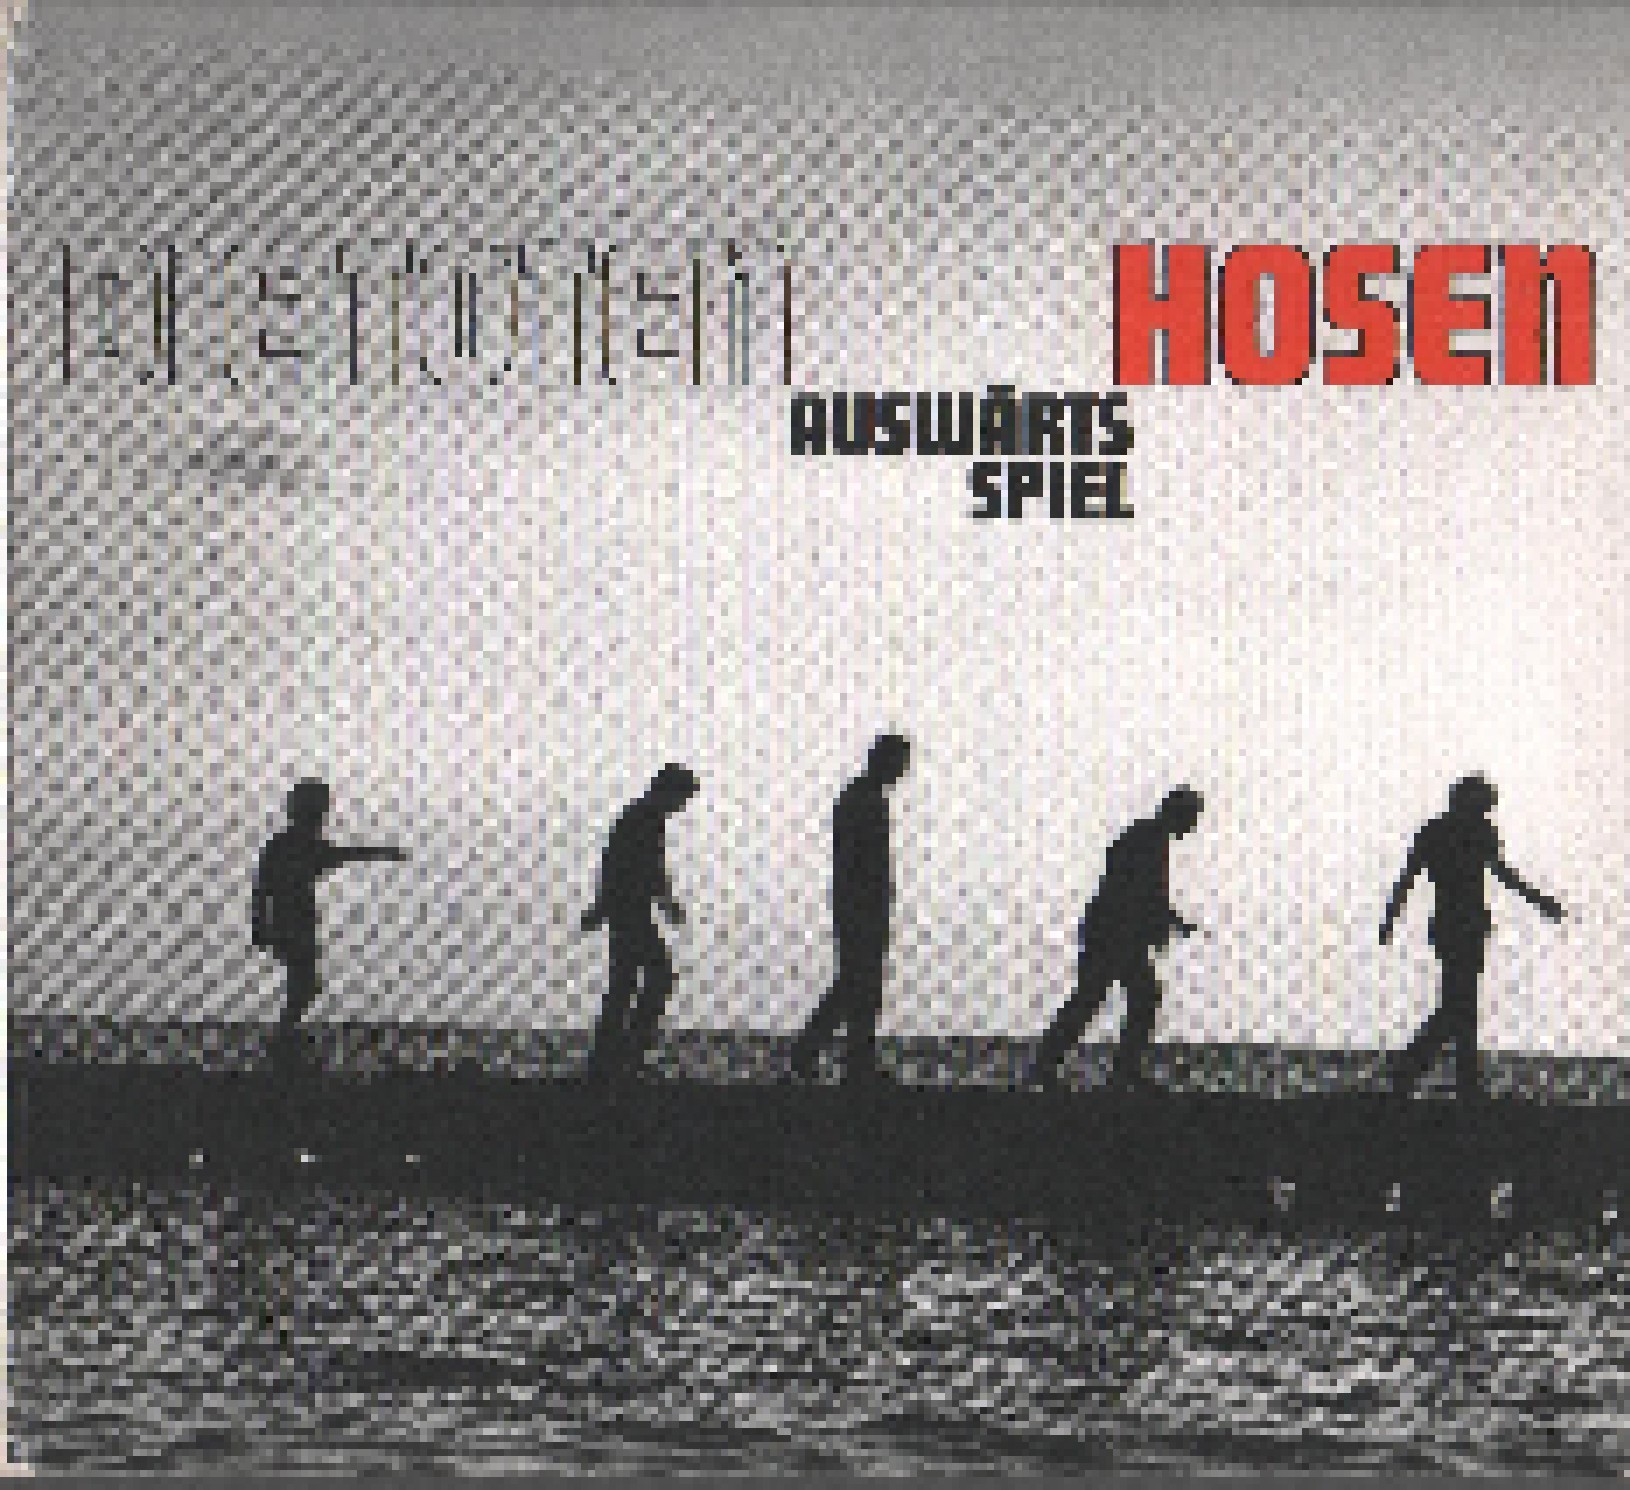 Die Toten Hosen Auswärtsspiel Album Cover